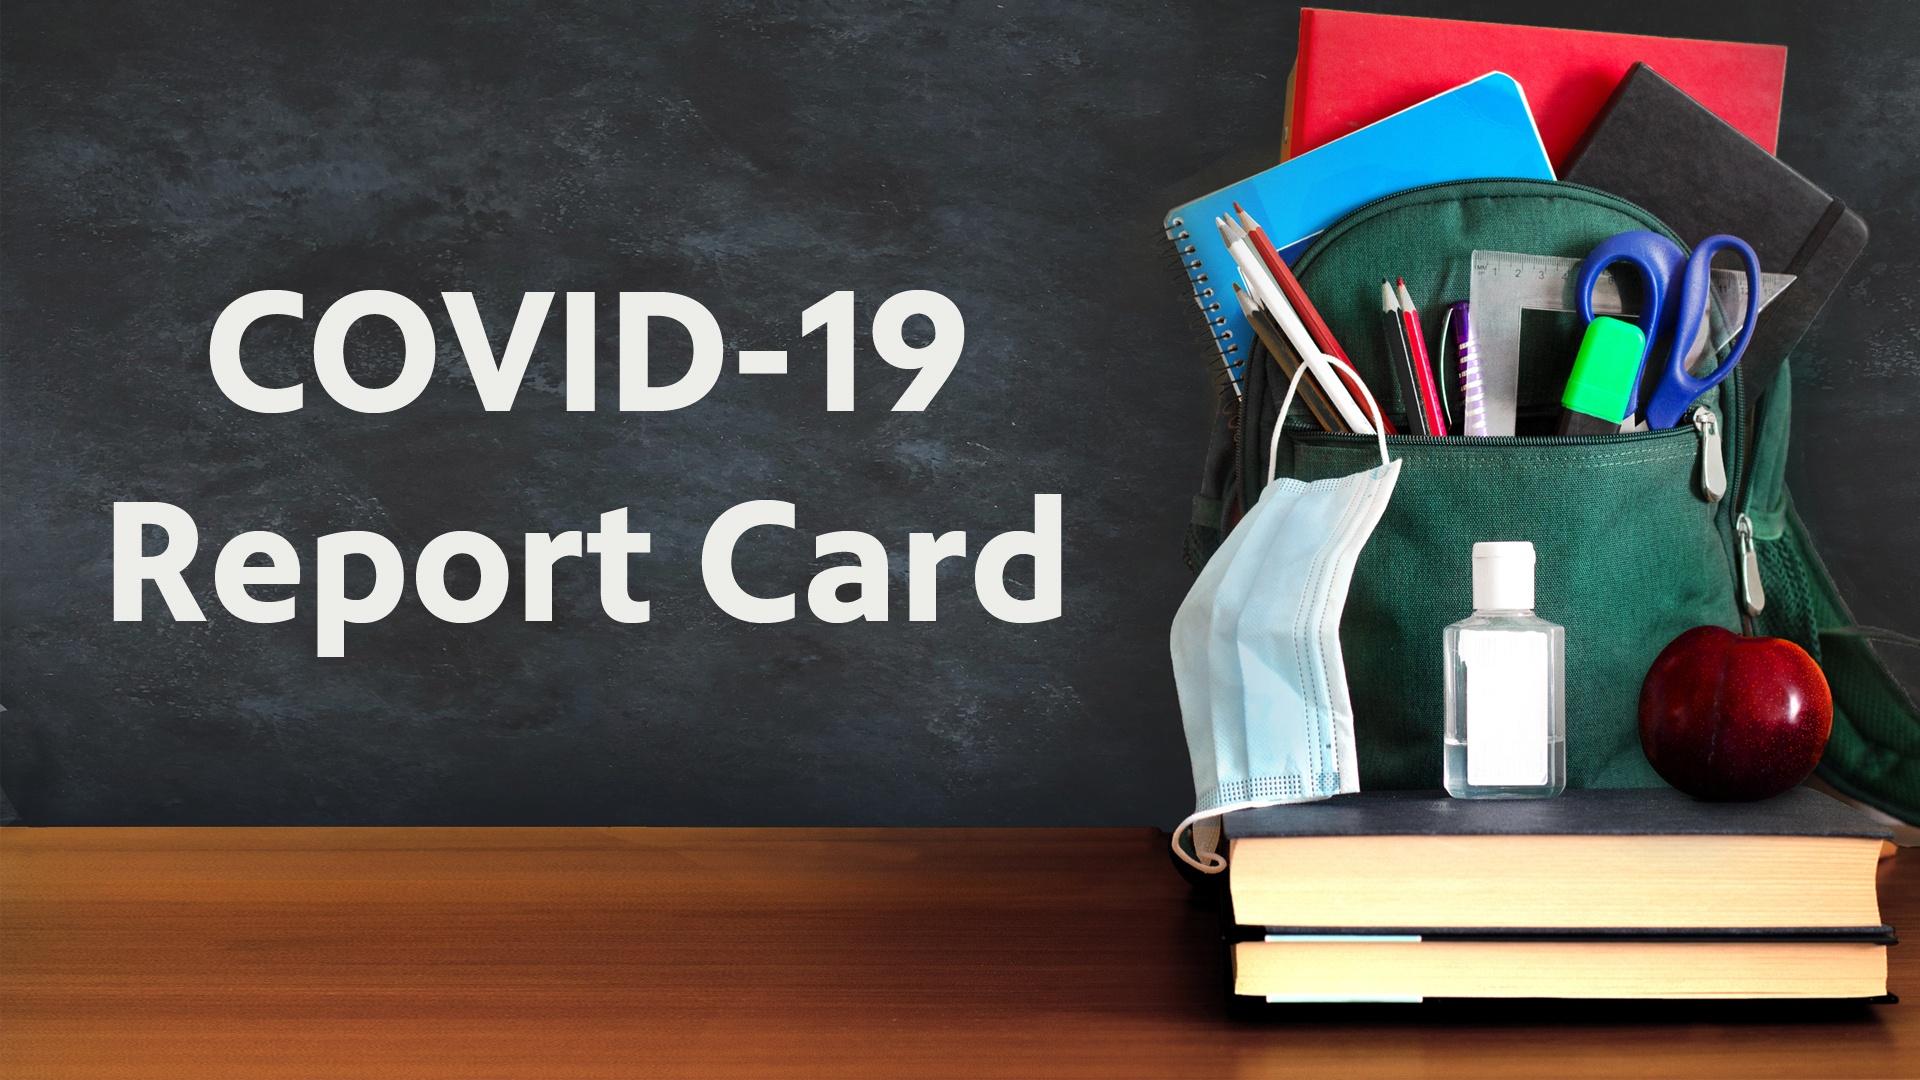 COVID-19 Report Card